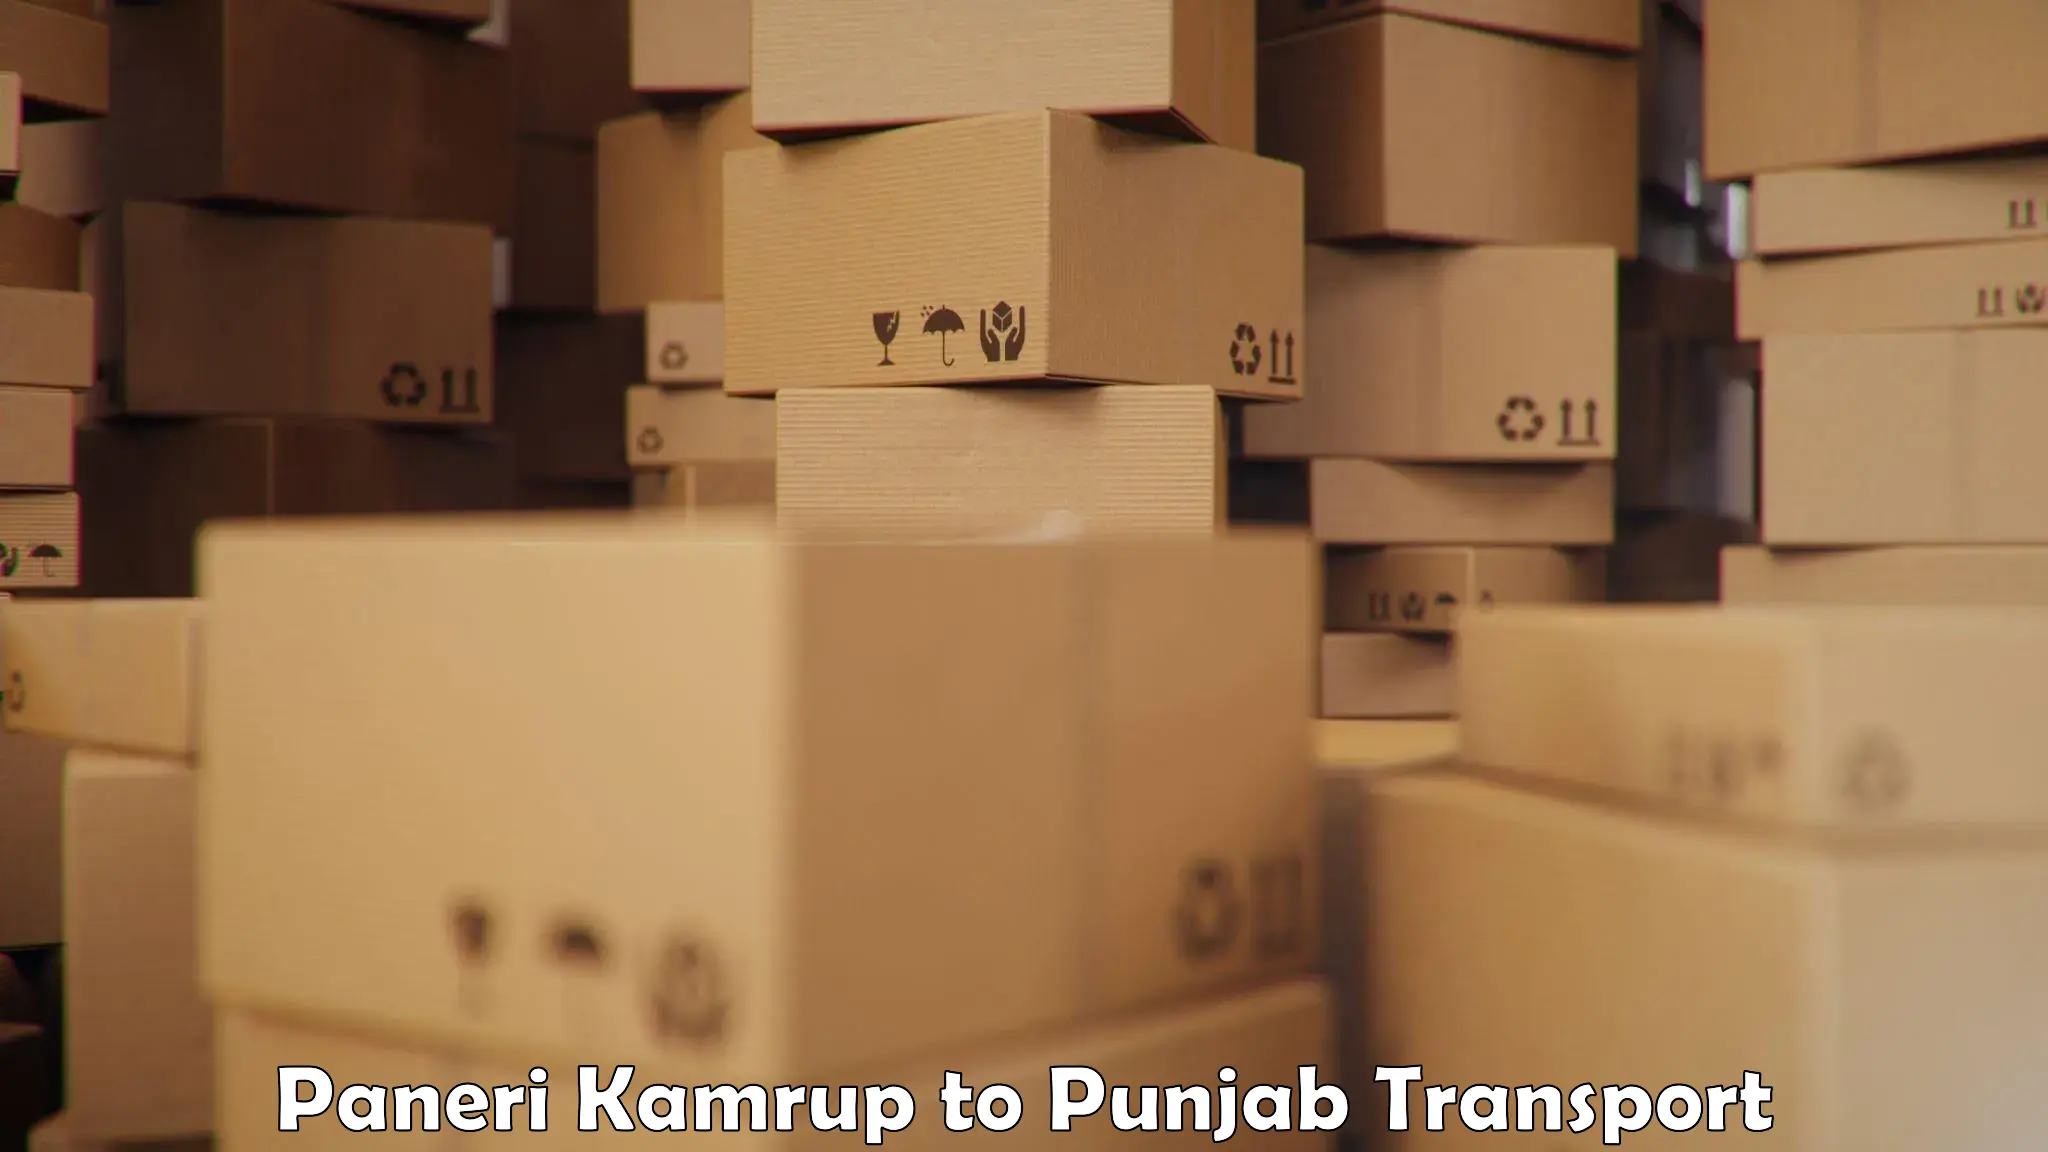 Cycle transportation service Paneri Kamrup to Punjab